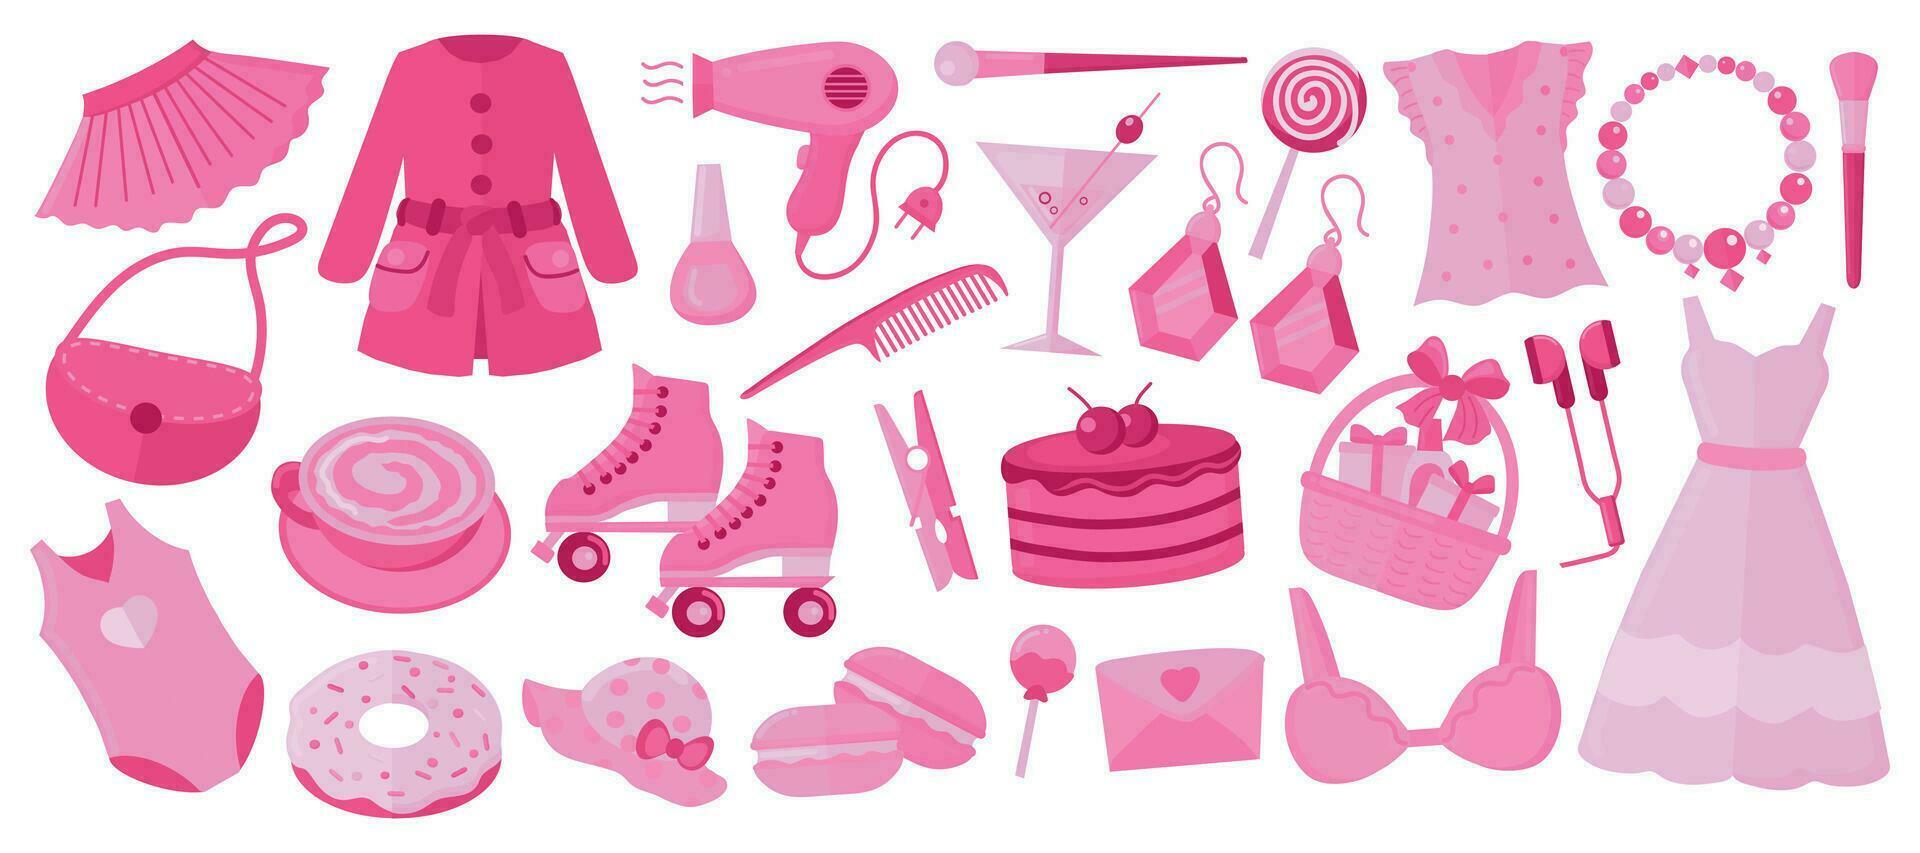 de moda núcleo rosado, barbiecore elementos colocar, 2000 estilo. rosado colores ropa, accesorios y dulces y bebidas vector